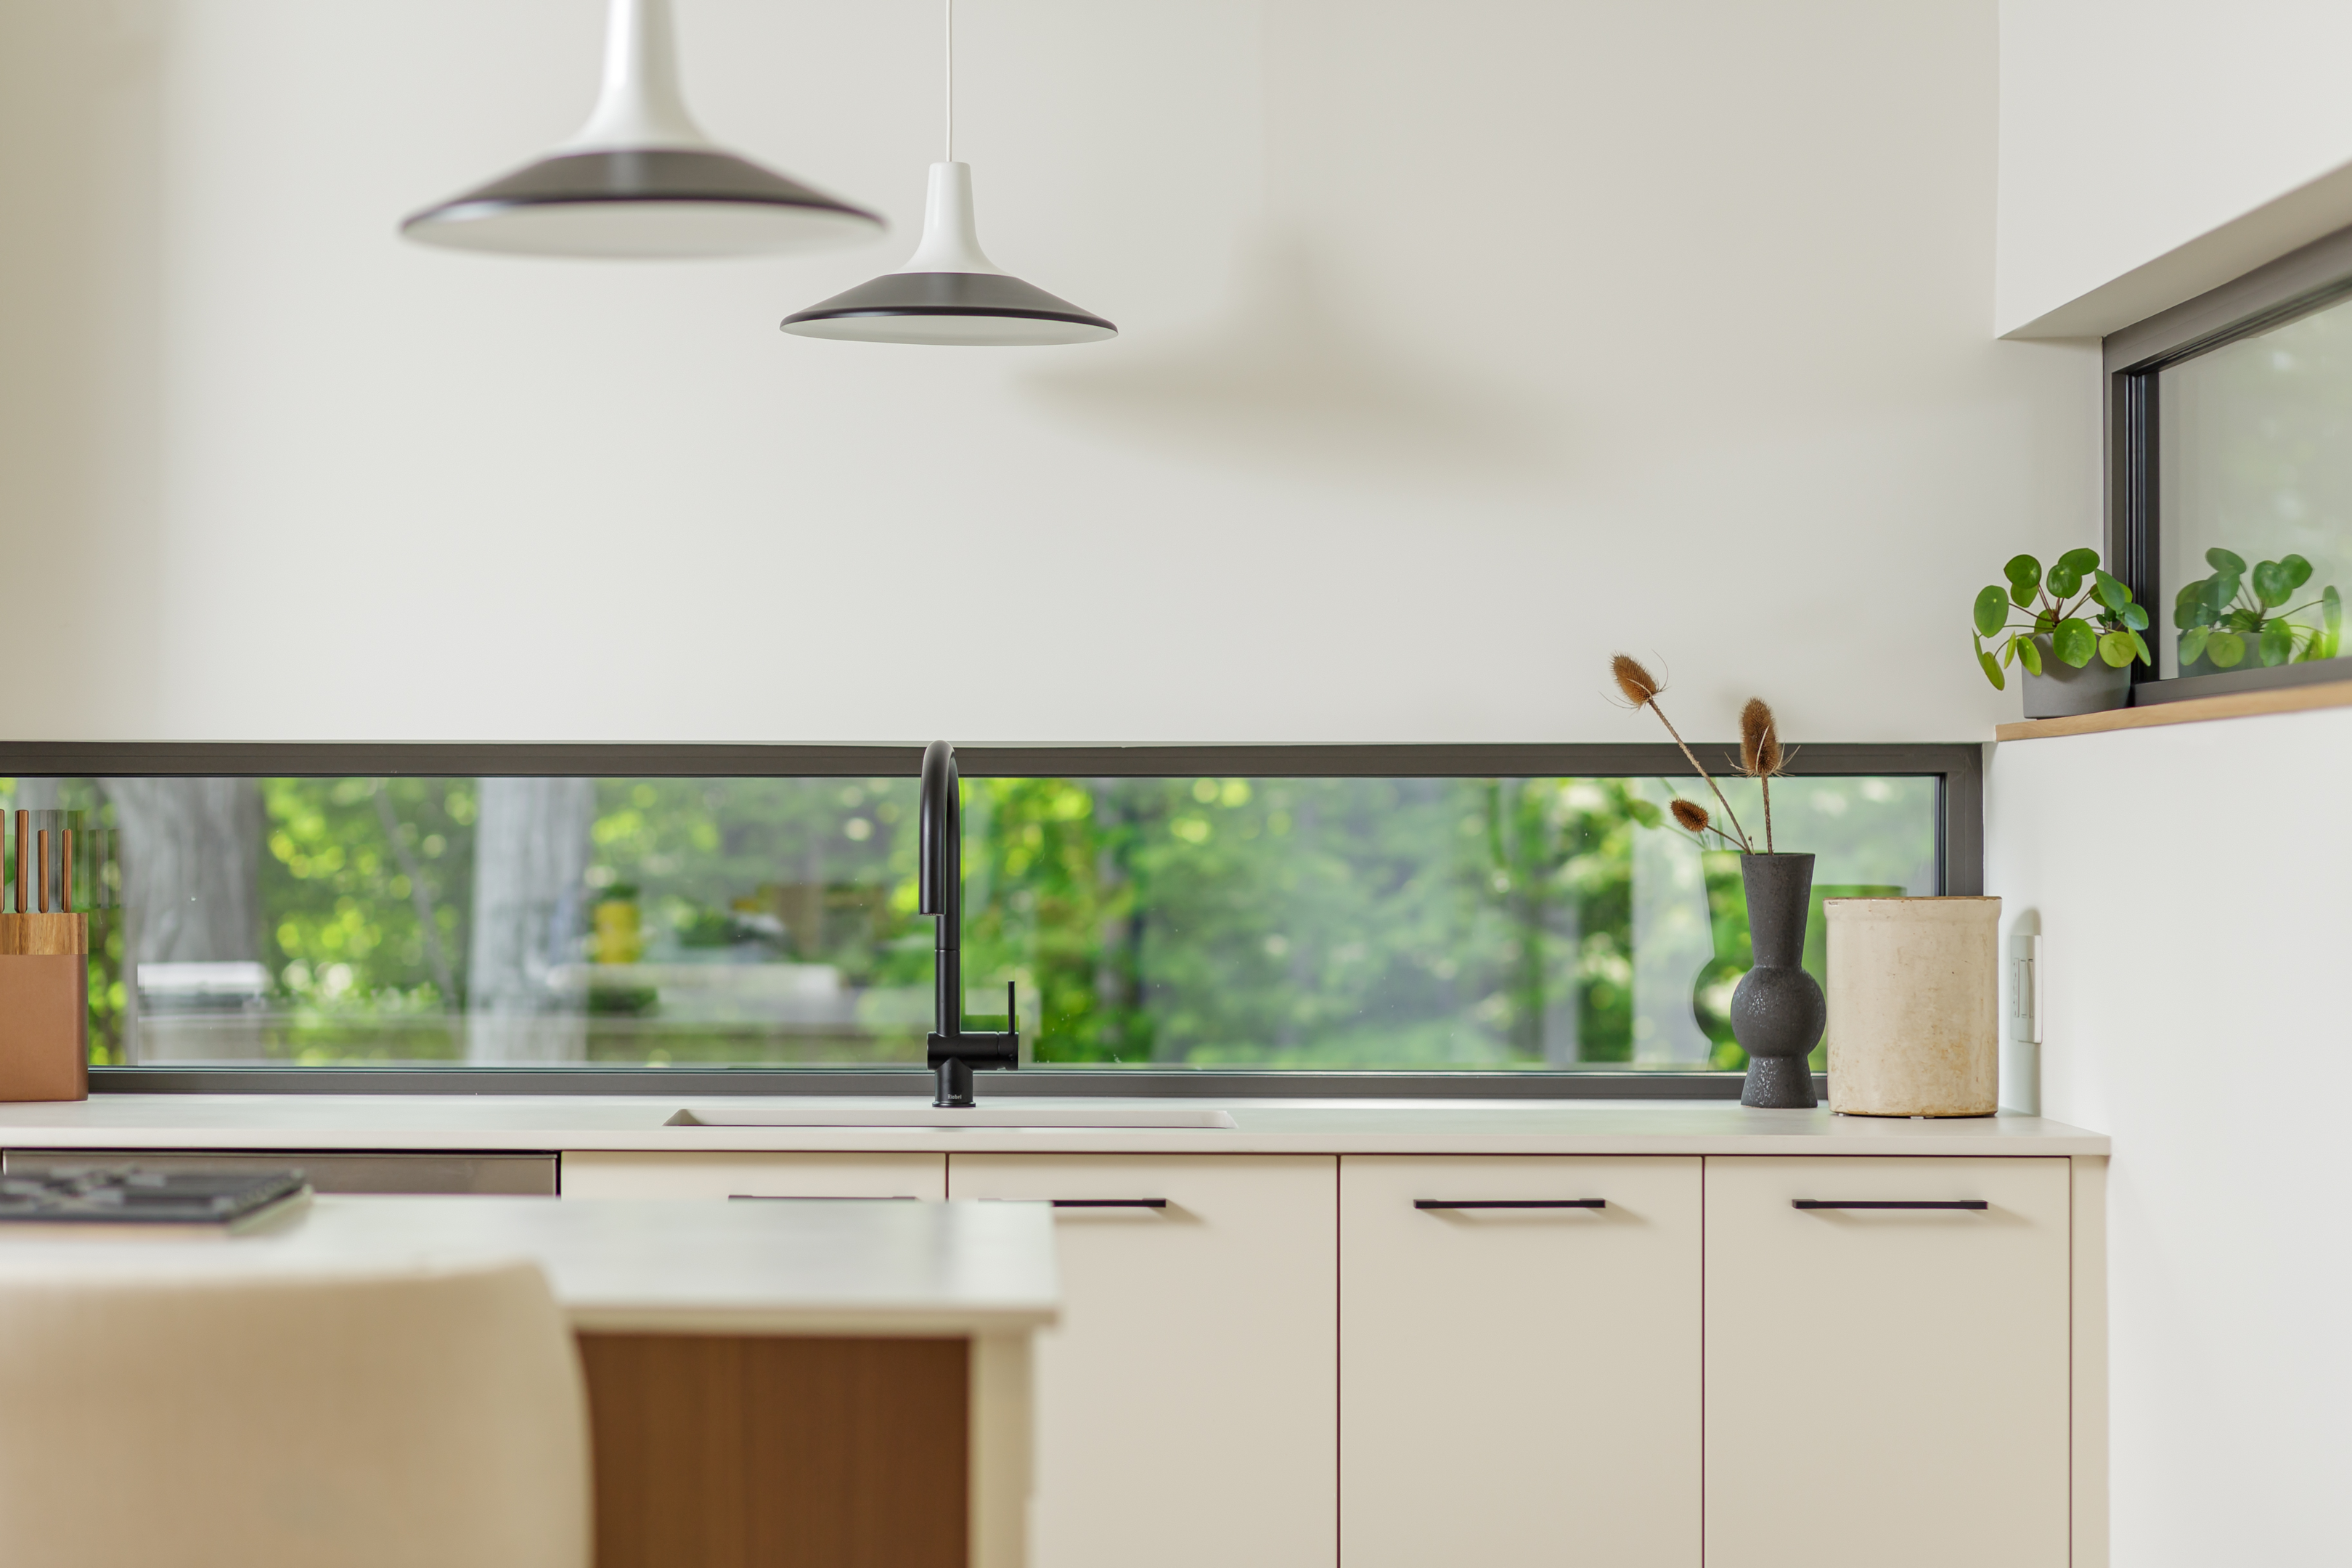 modern minimalist kitchen